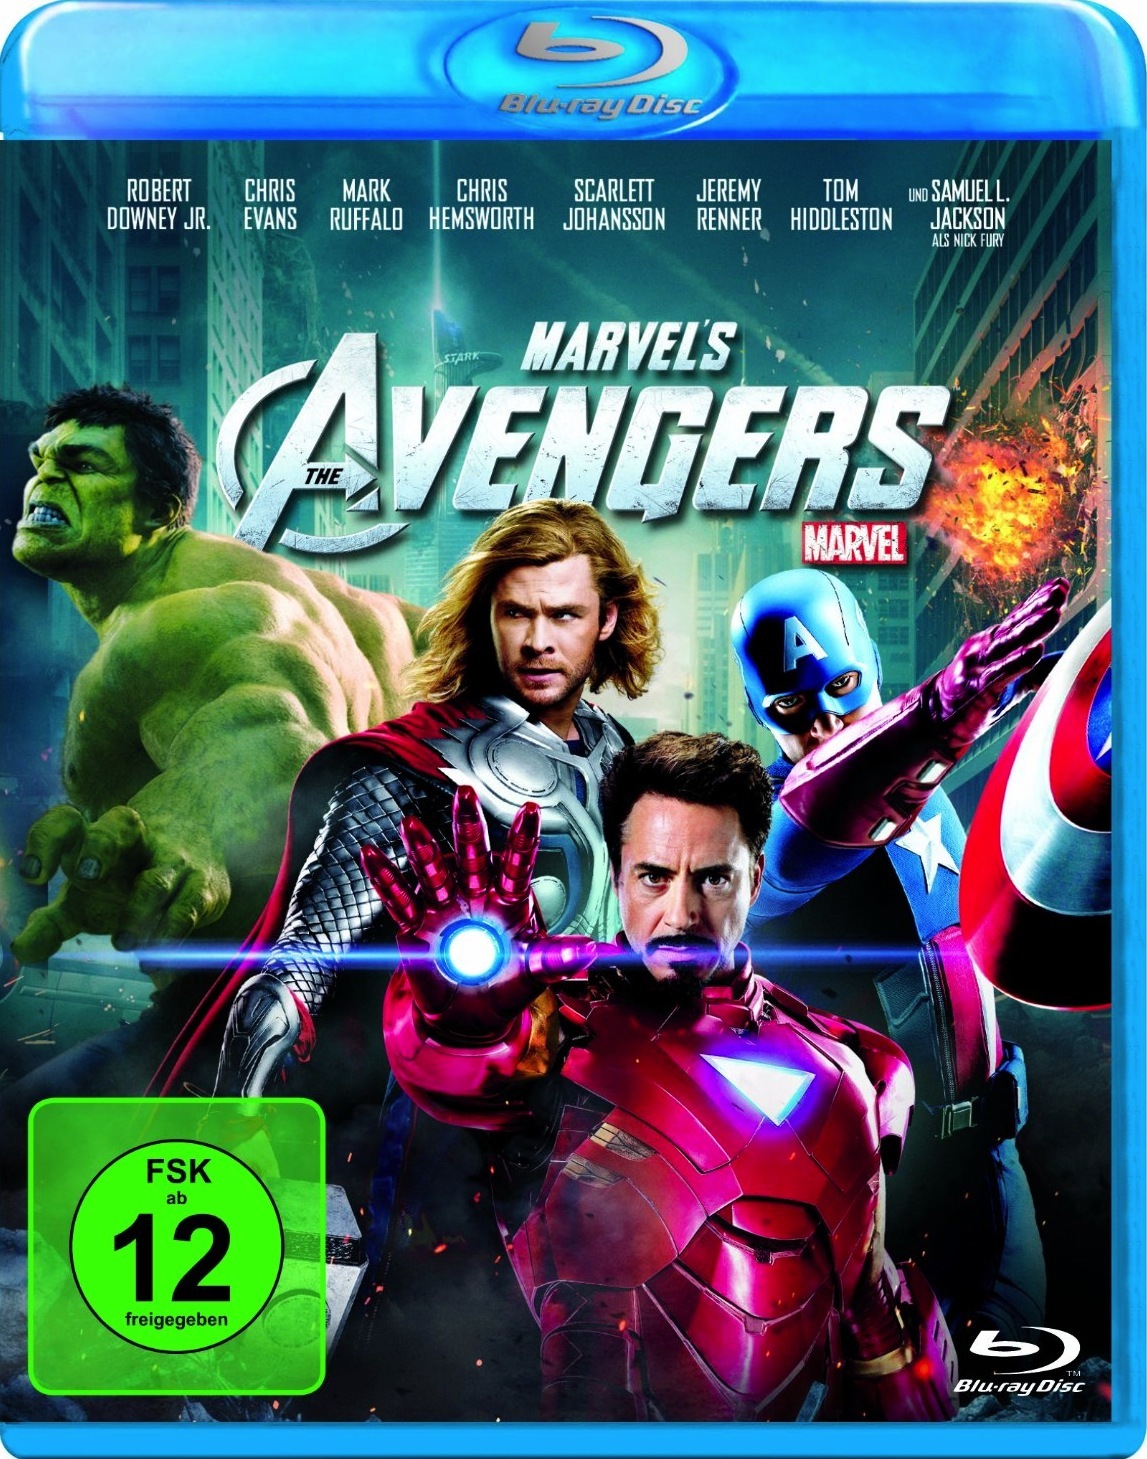 [复仇者联盟].The.Avengers.2012.UHD.BluRay.2160p.HEVC.TrueHD.7.1-TERMiNAL   55.97G-3.jpg